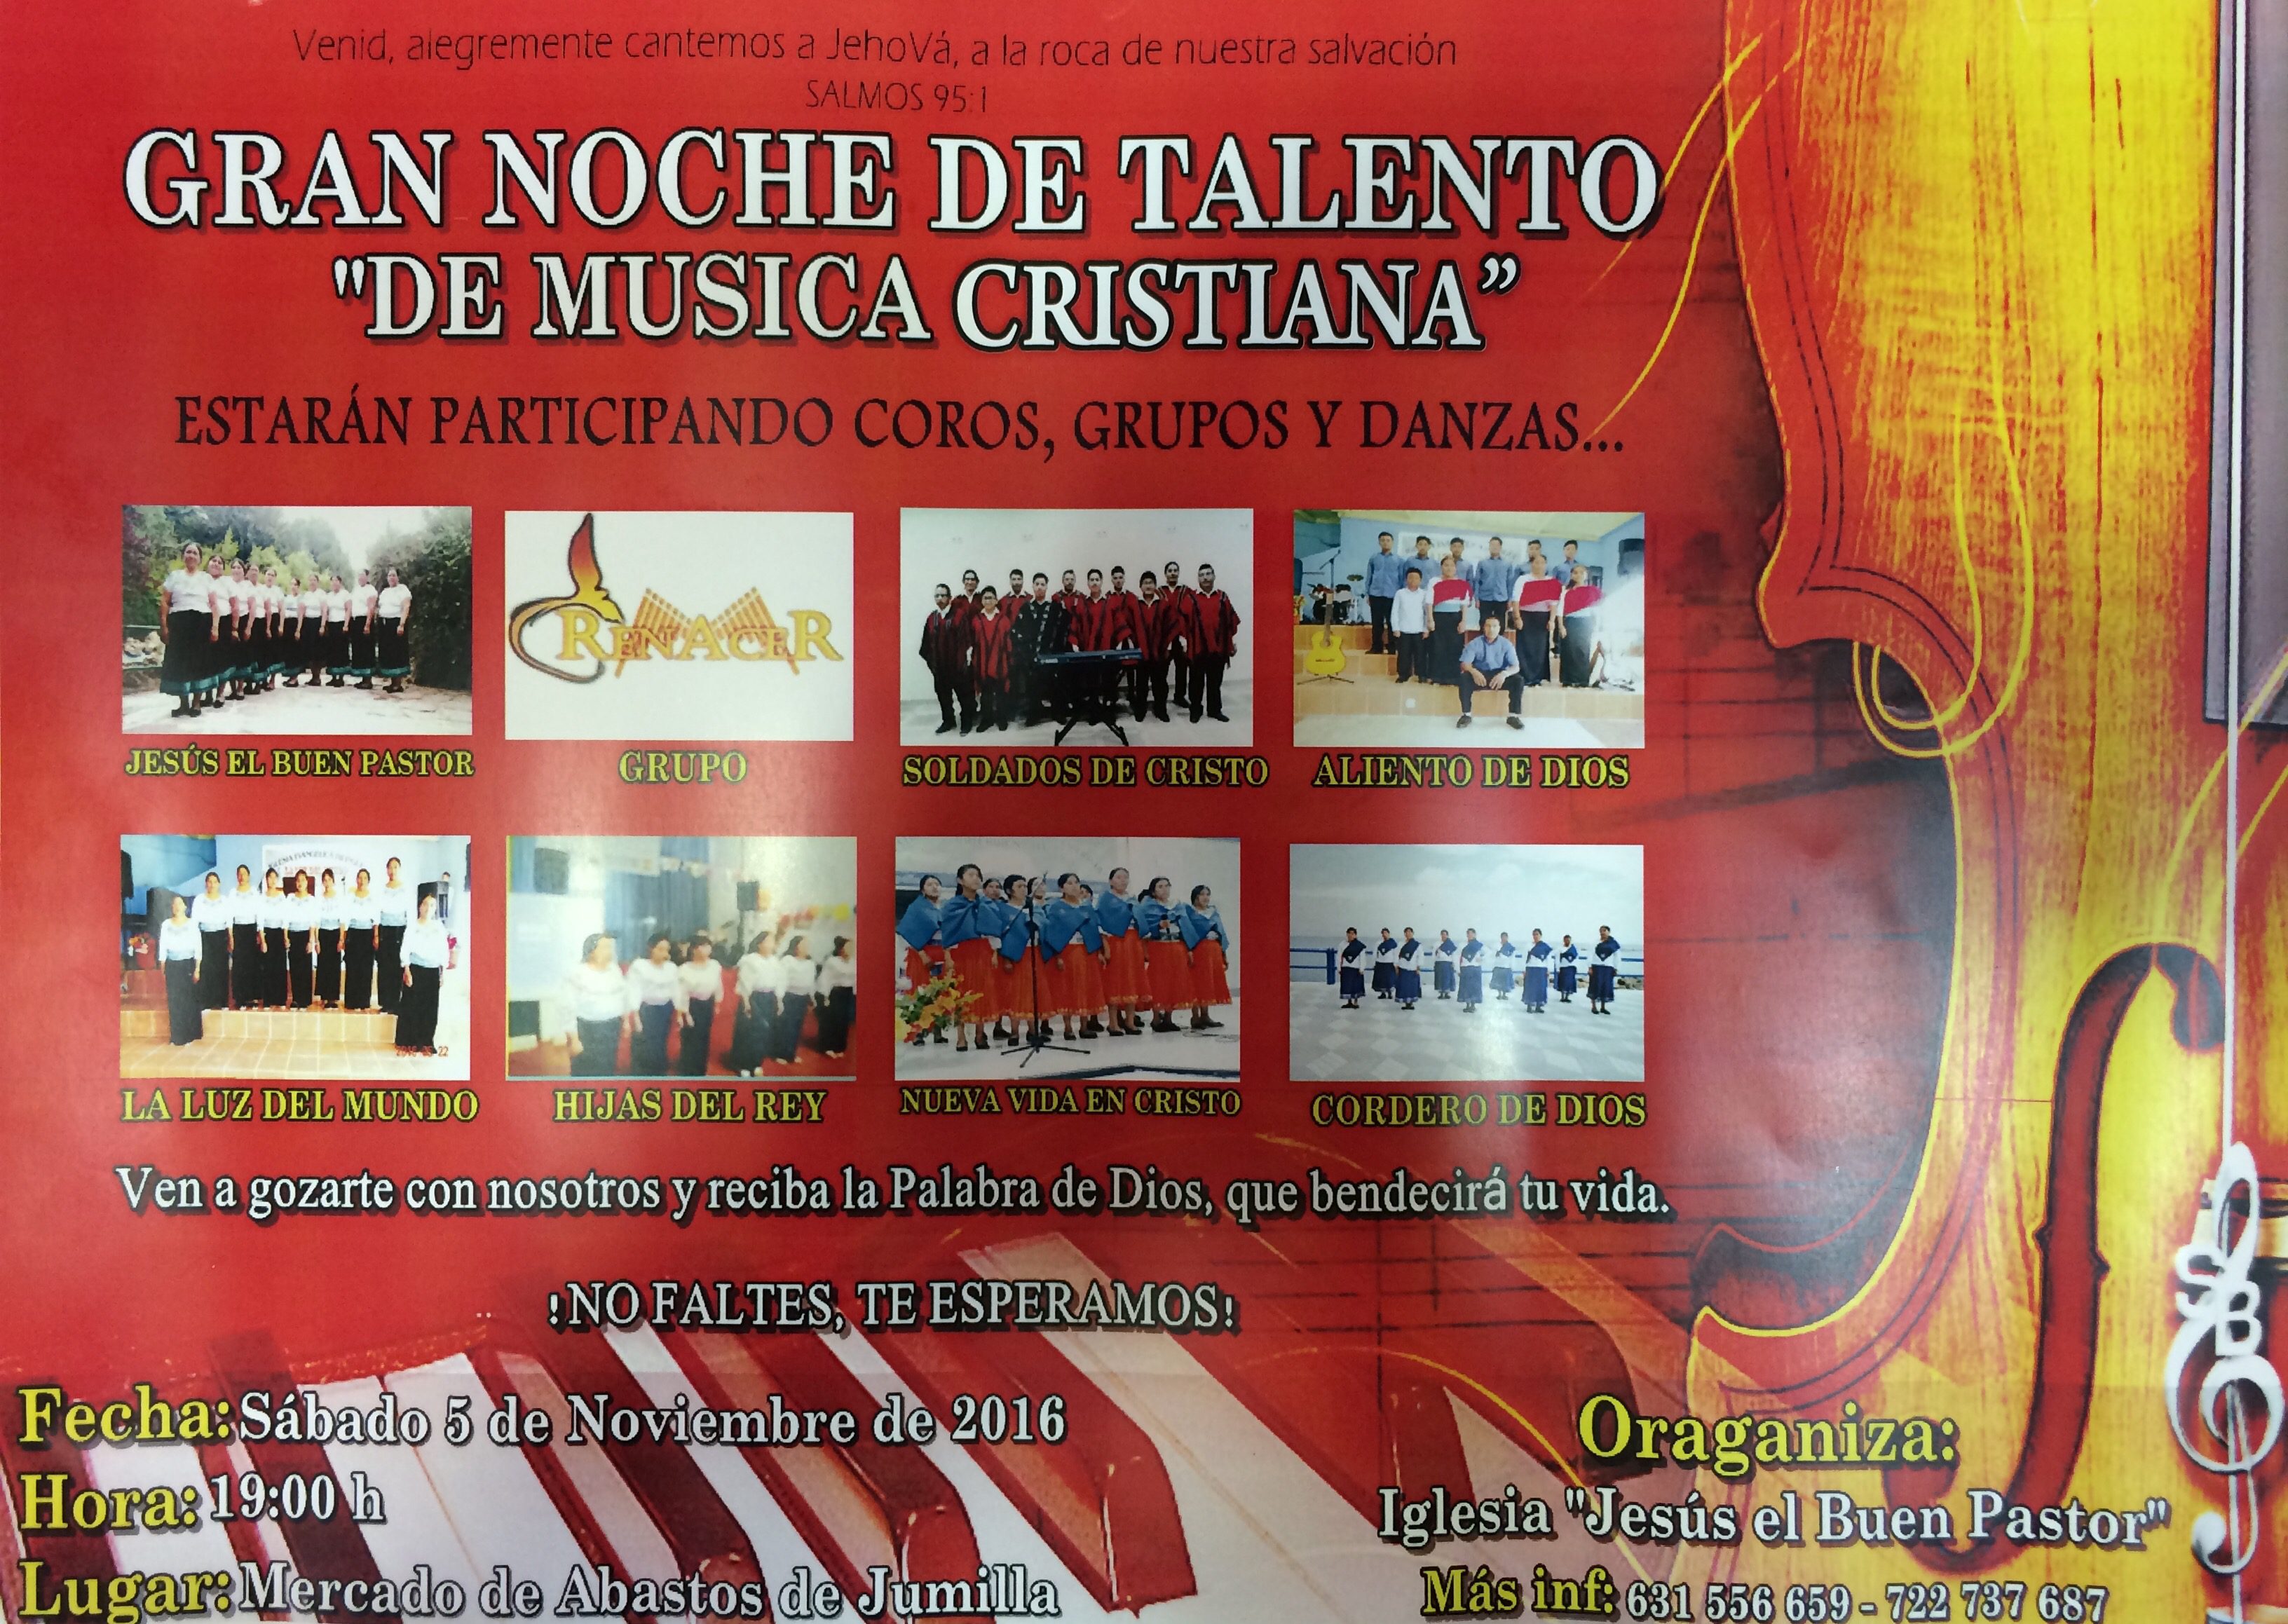 La Iglesia Jesús del Buen Pastor organiza una gran noche de talento de “Música Cristiana” en el salón del mercado